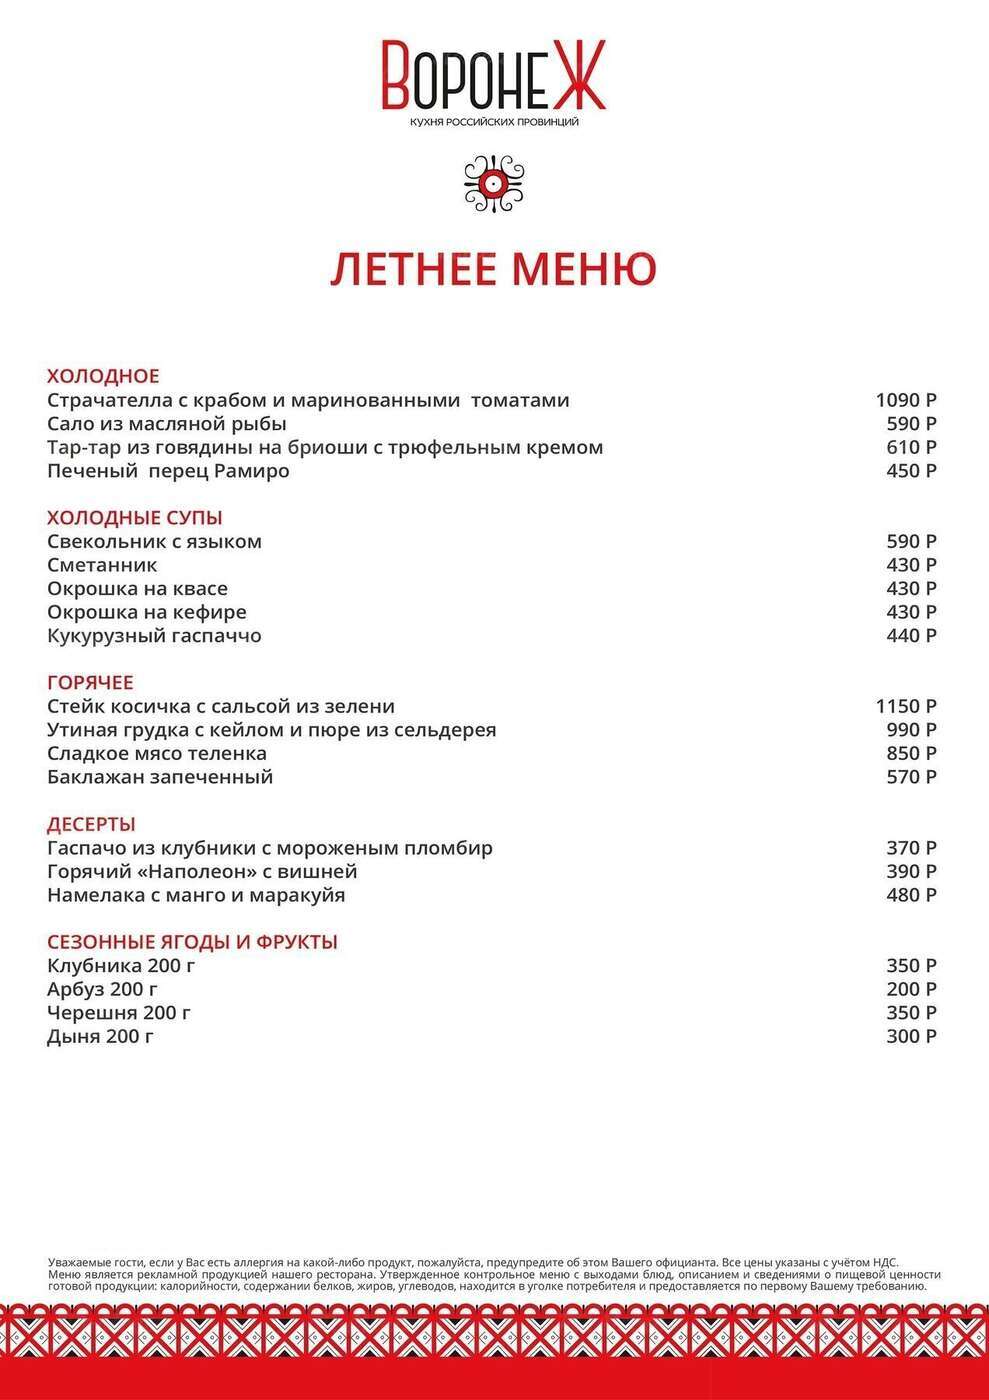 1586 воронеж ресторан меню. Ресторан Воронеж Москва меню.